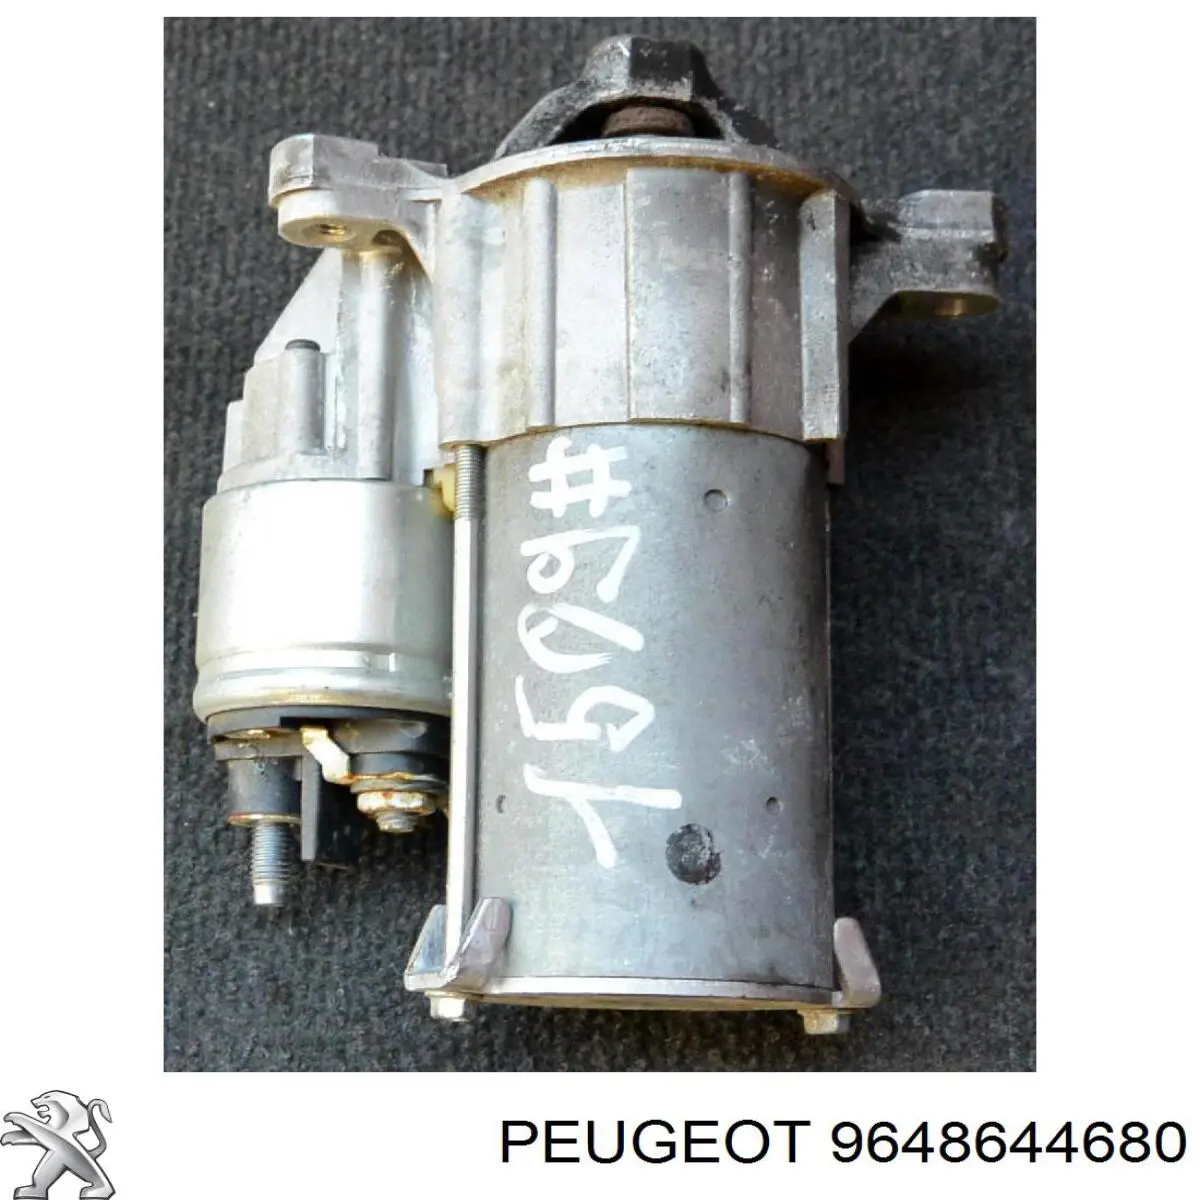 9648644680 Peugeot/Citroen motor de arranque